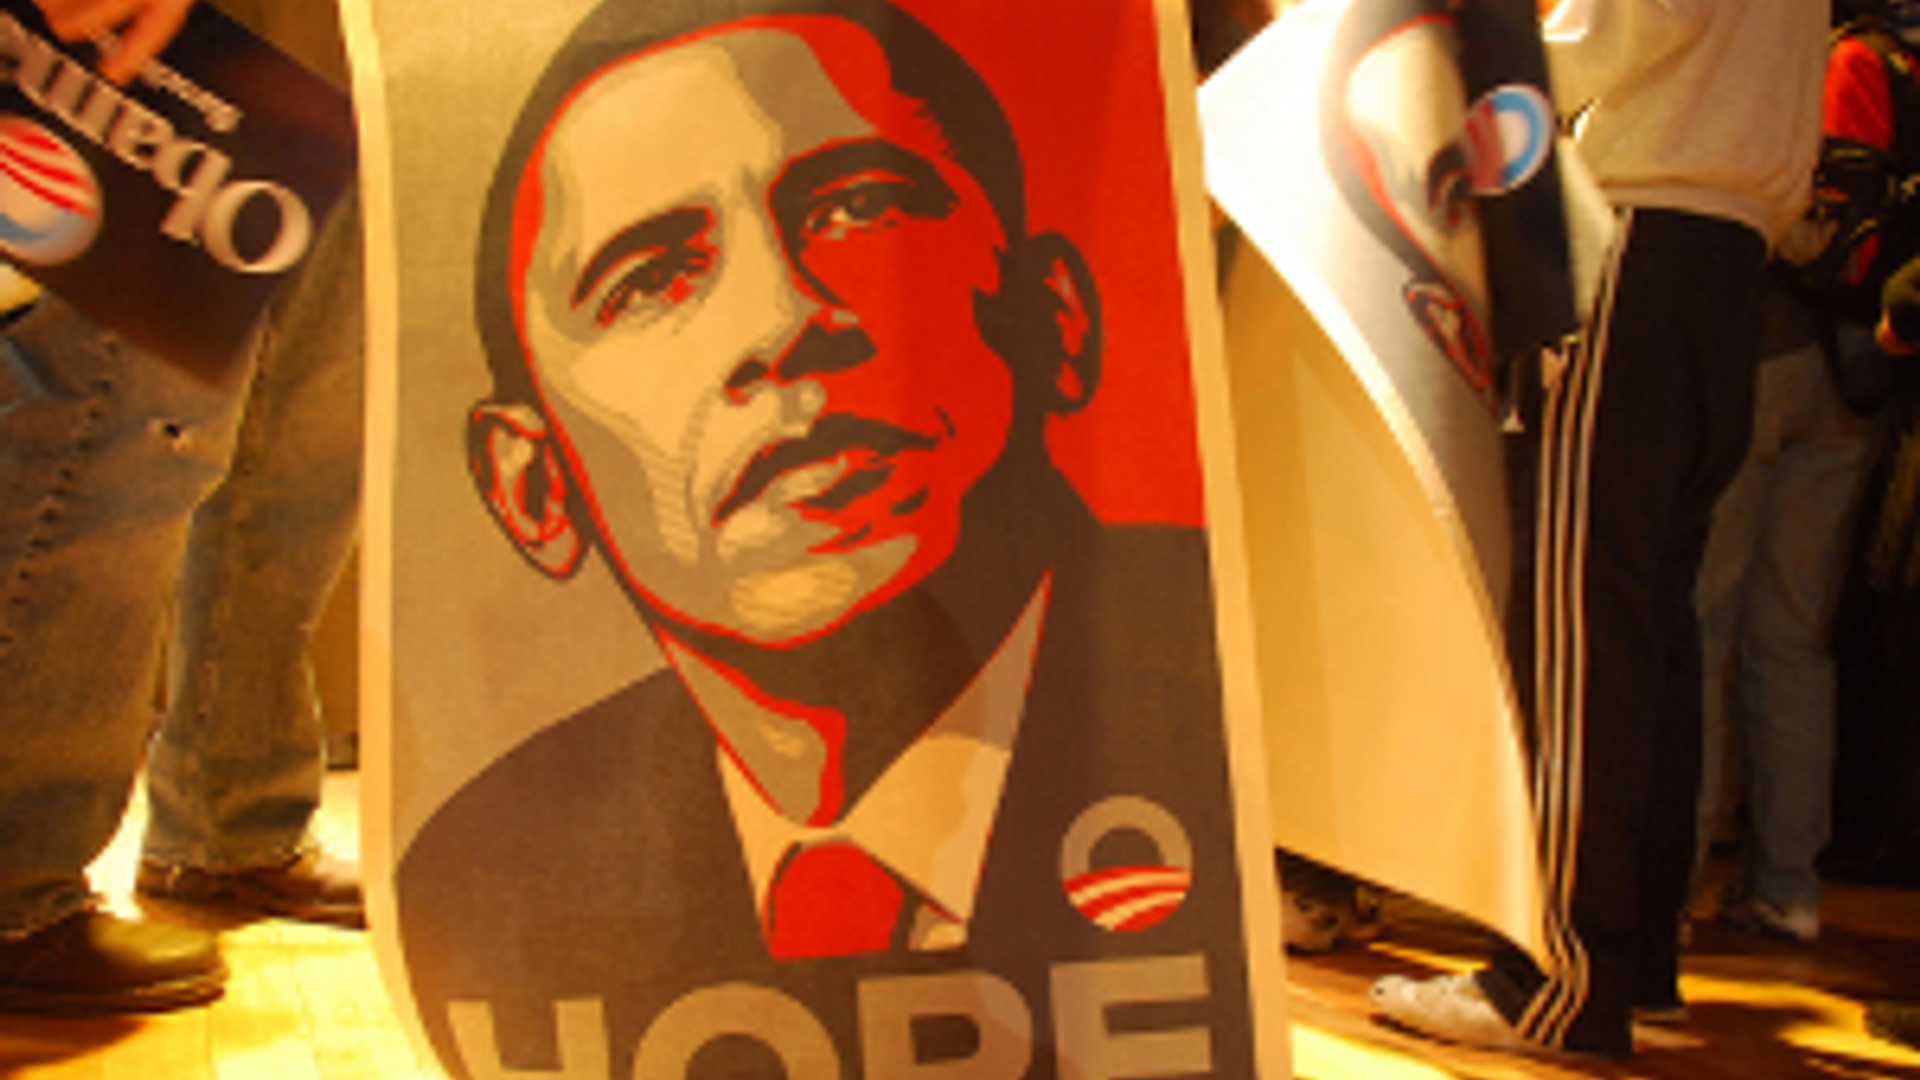 flickr_obama_hope_poster_300.jpg